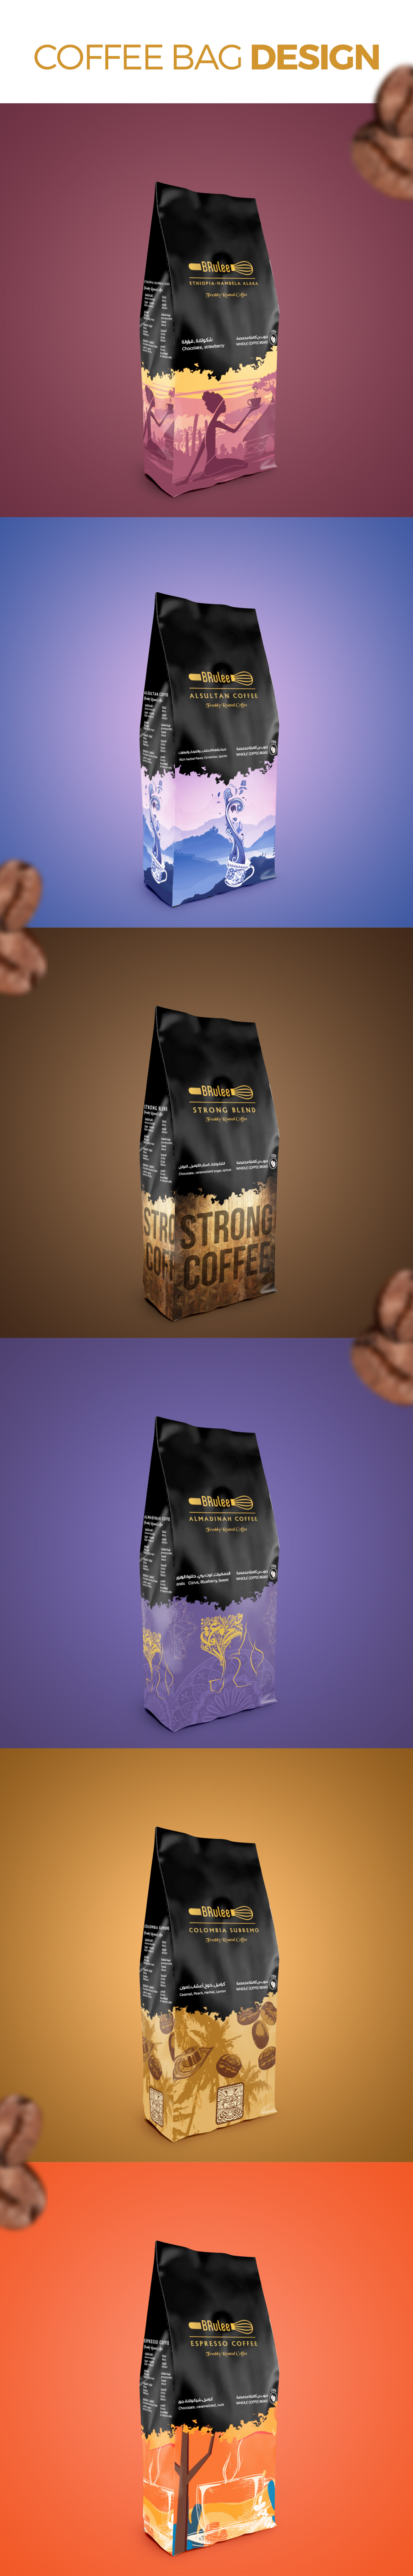 Coffee coffee bag design coffee packaging Packaging Pruduct Design